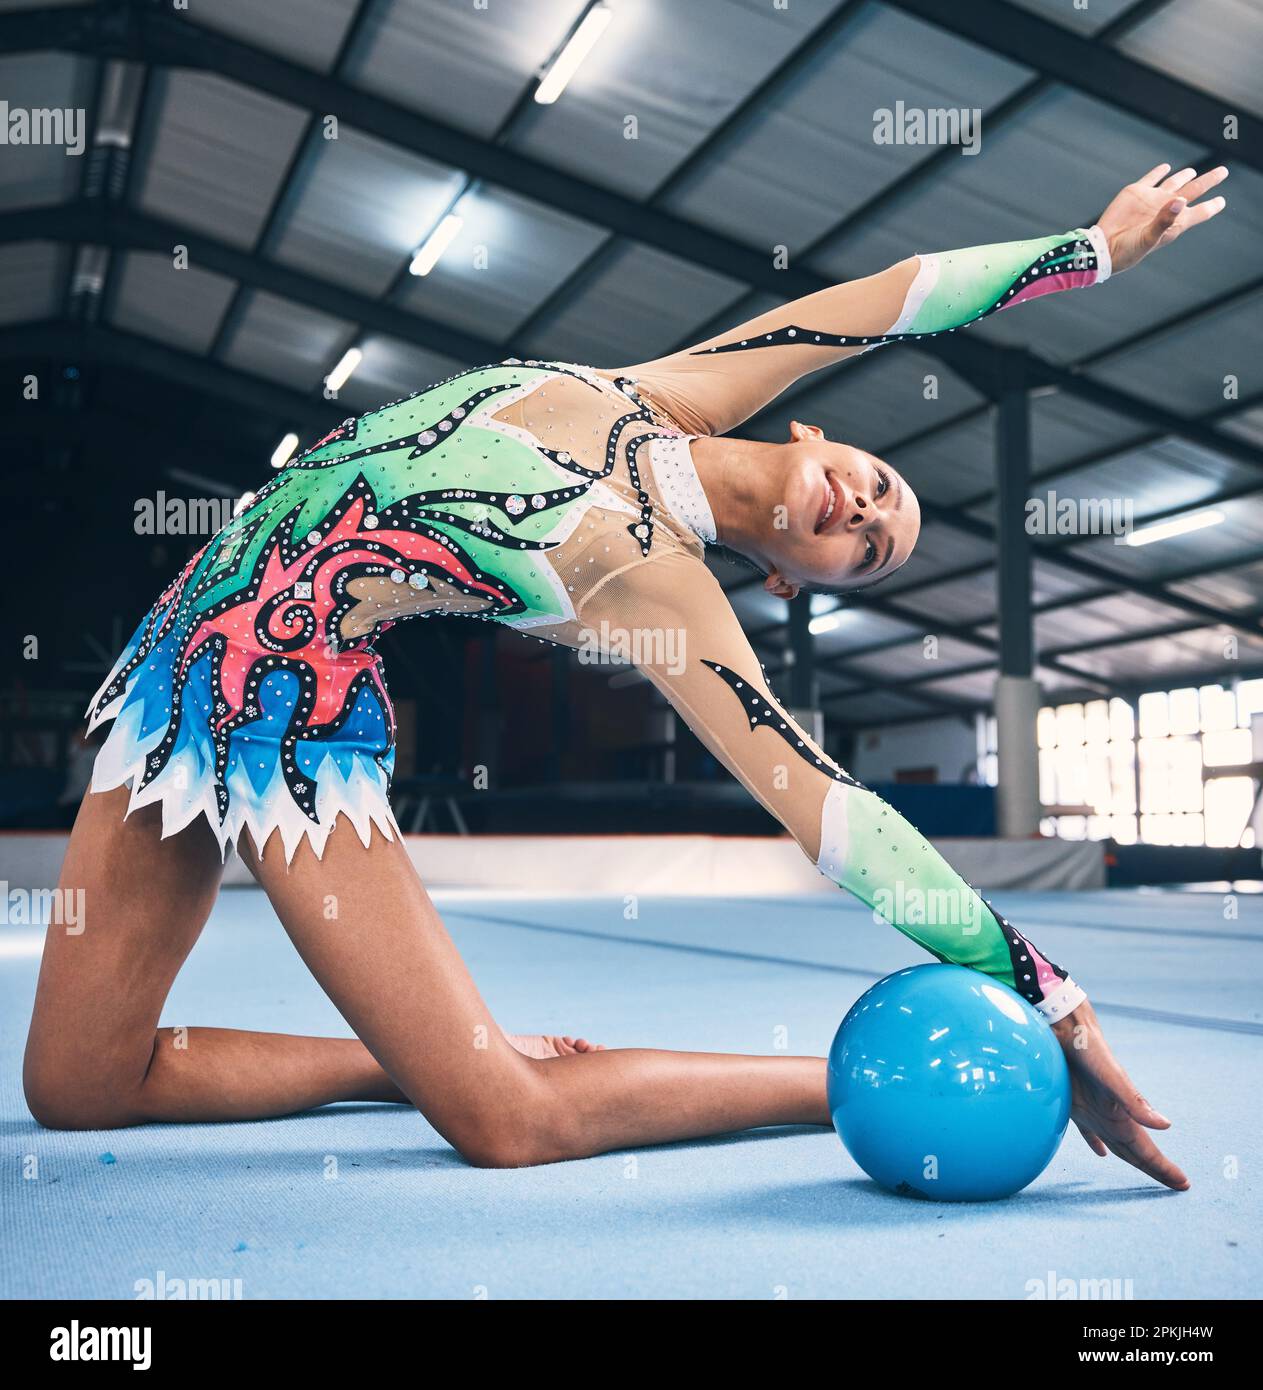 Danse Ruban Et Gymnastique Rythmique Femme En Gym Avec Action Et  Performance Pour La Forme. Athlète De Compétition Et Image stock - Image du  fuselage, danse: 284685129